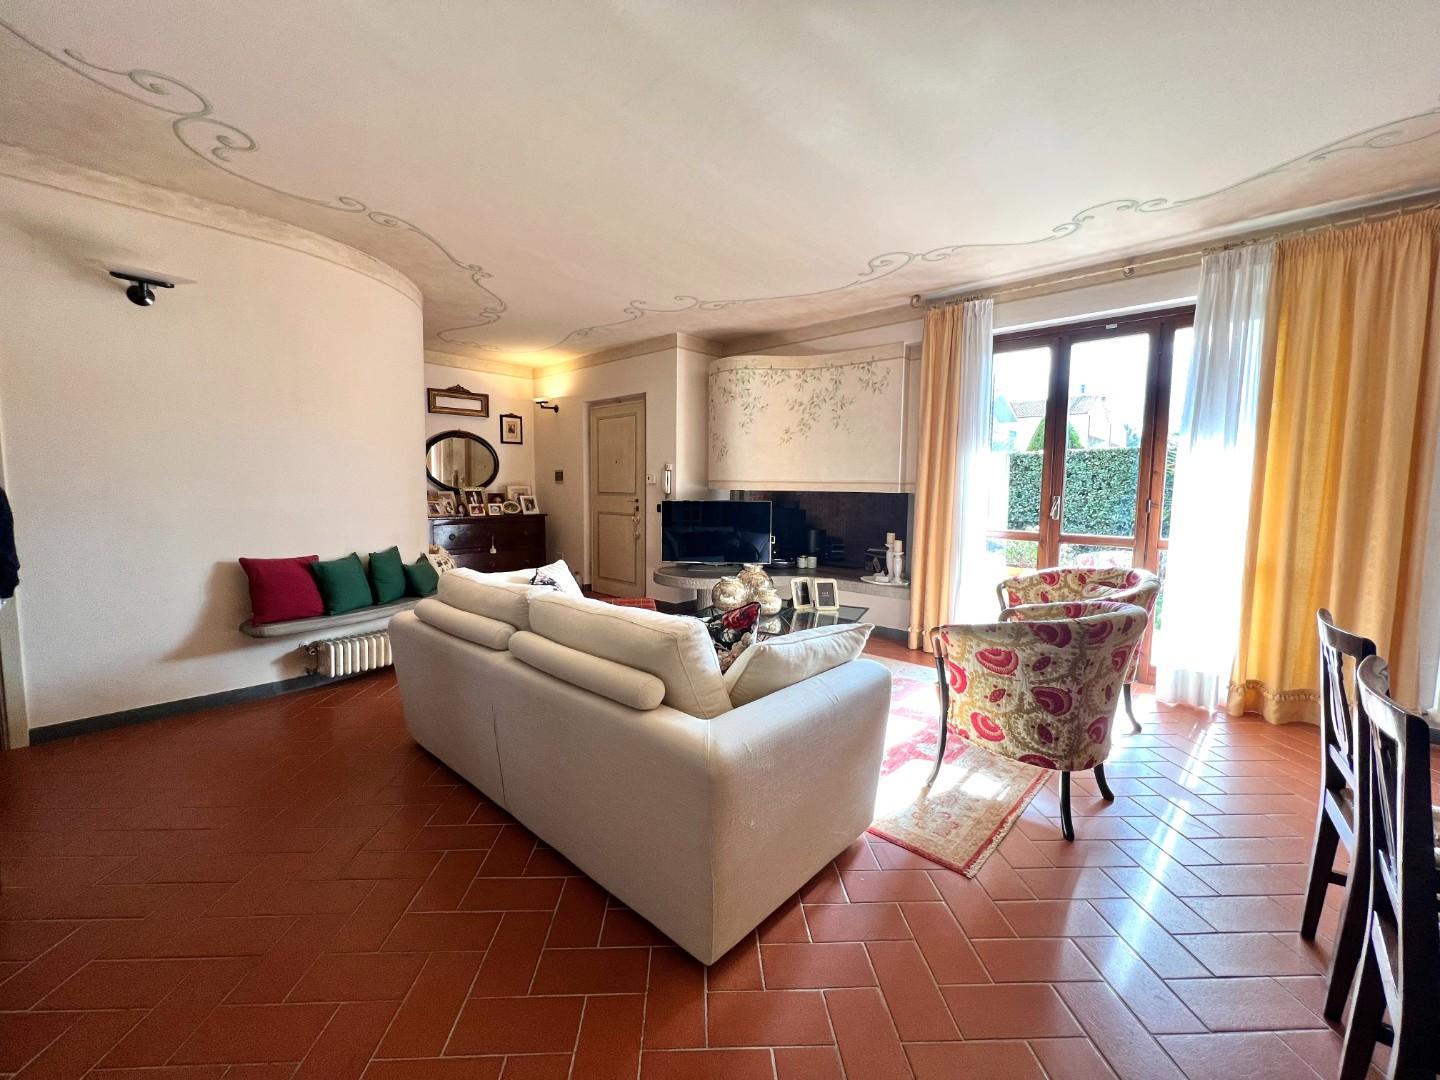 Villetta a schiera angolare in vendita a Pontedera | Agenzia Toscana Immobiliare